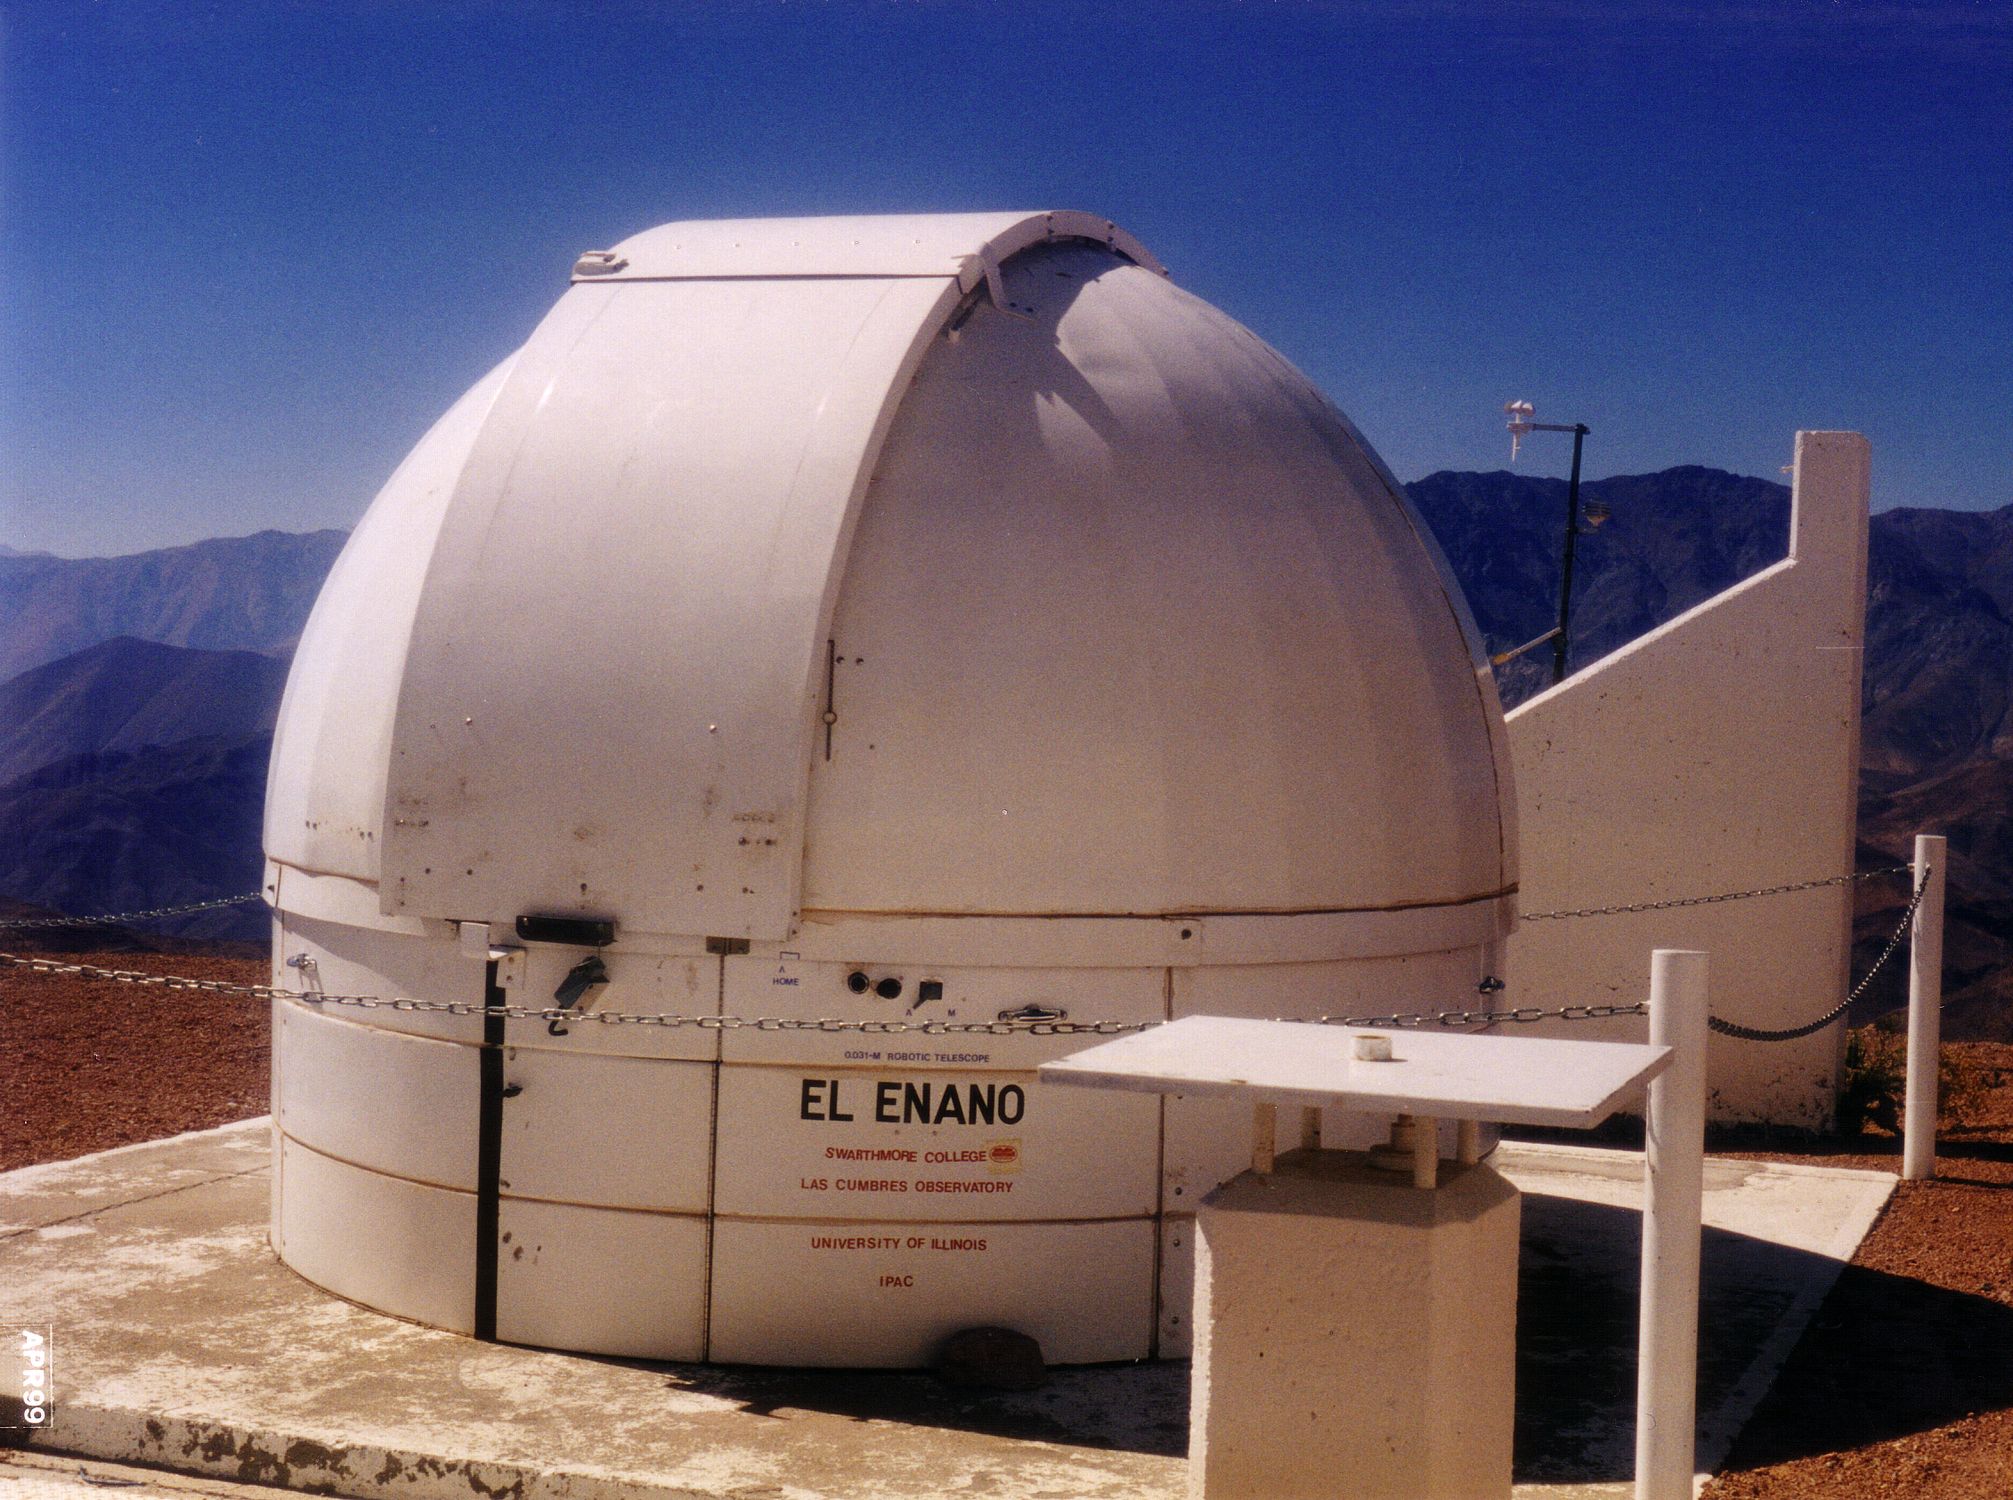 El Enano robotic telescope